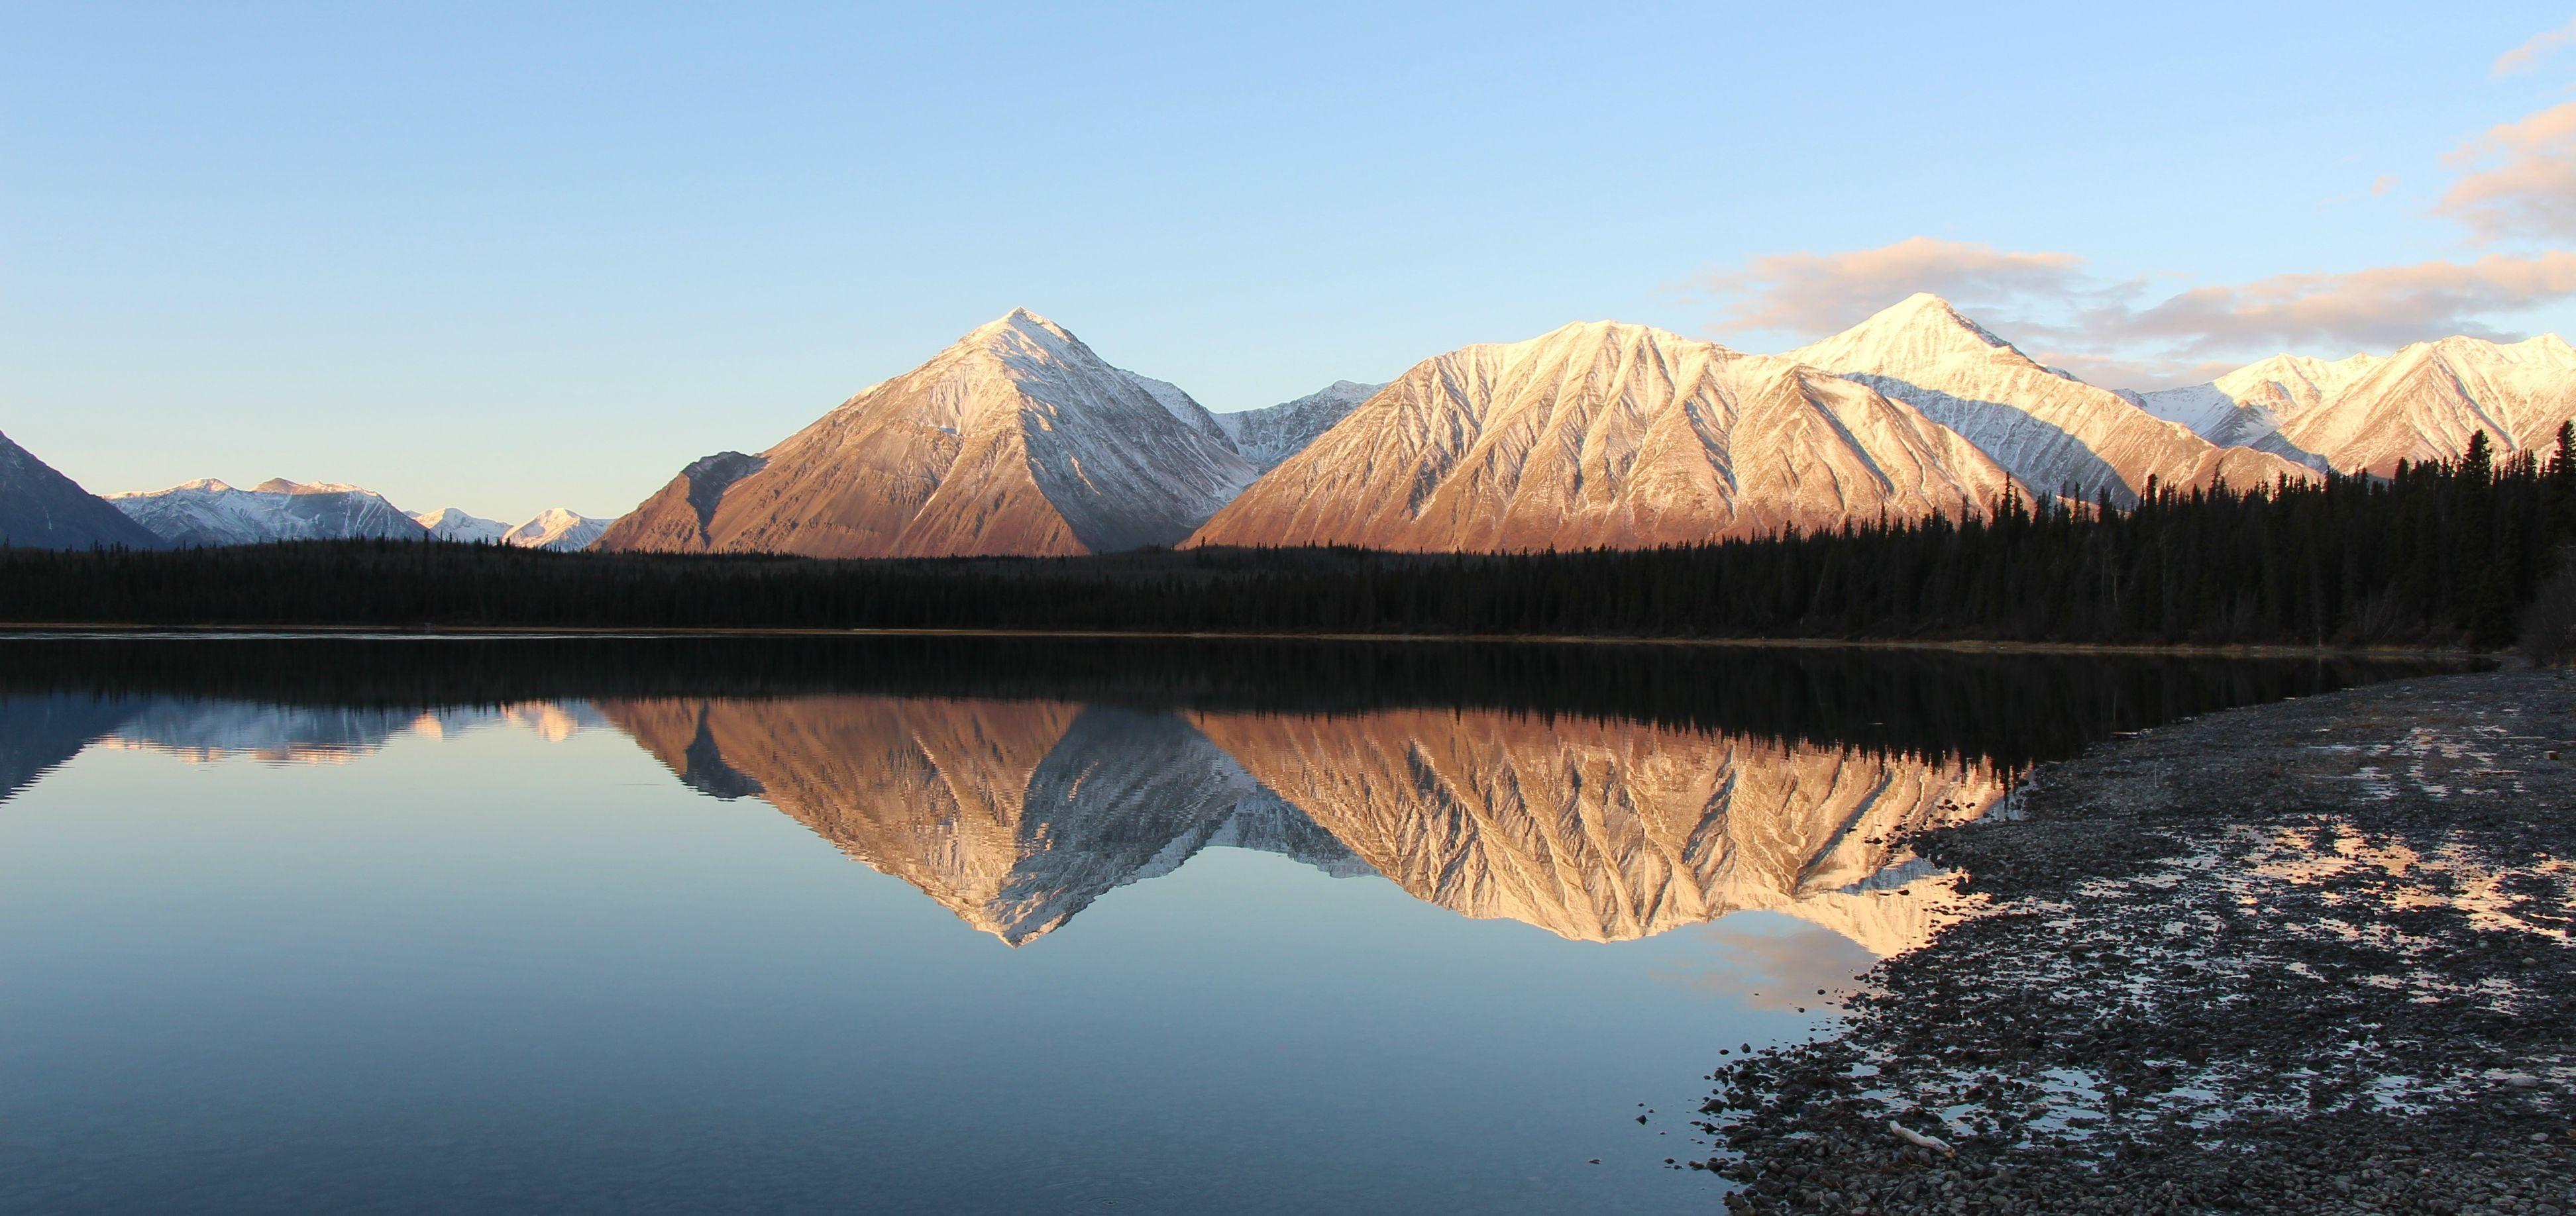 Một bức ảnh nền Yukon sẽ giúp bạn tạo dựng không gian làm việc hoàn hảo với những phong cảnh độc đáo, mang tới cảm giác thư thái để bạn có thể tập trung làm việc tốt hơn.